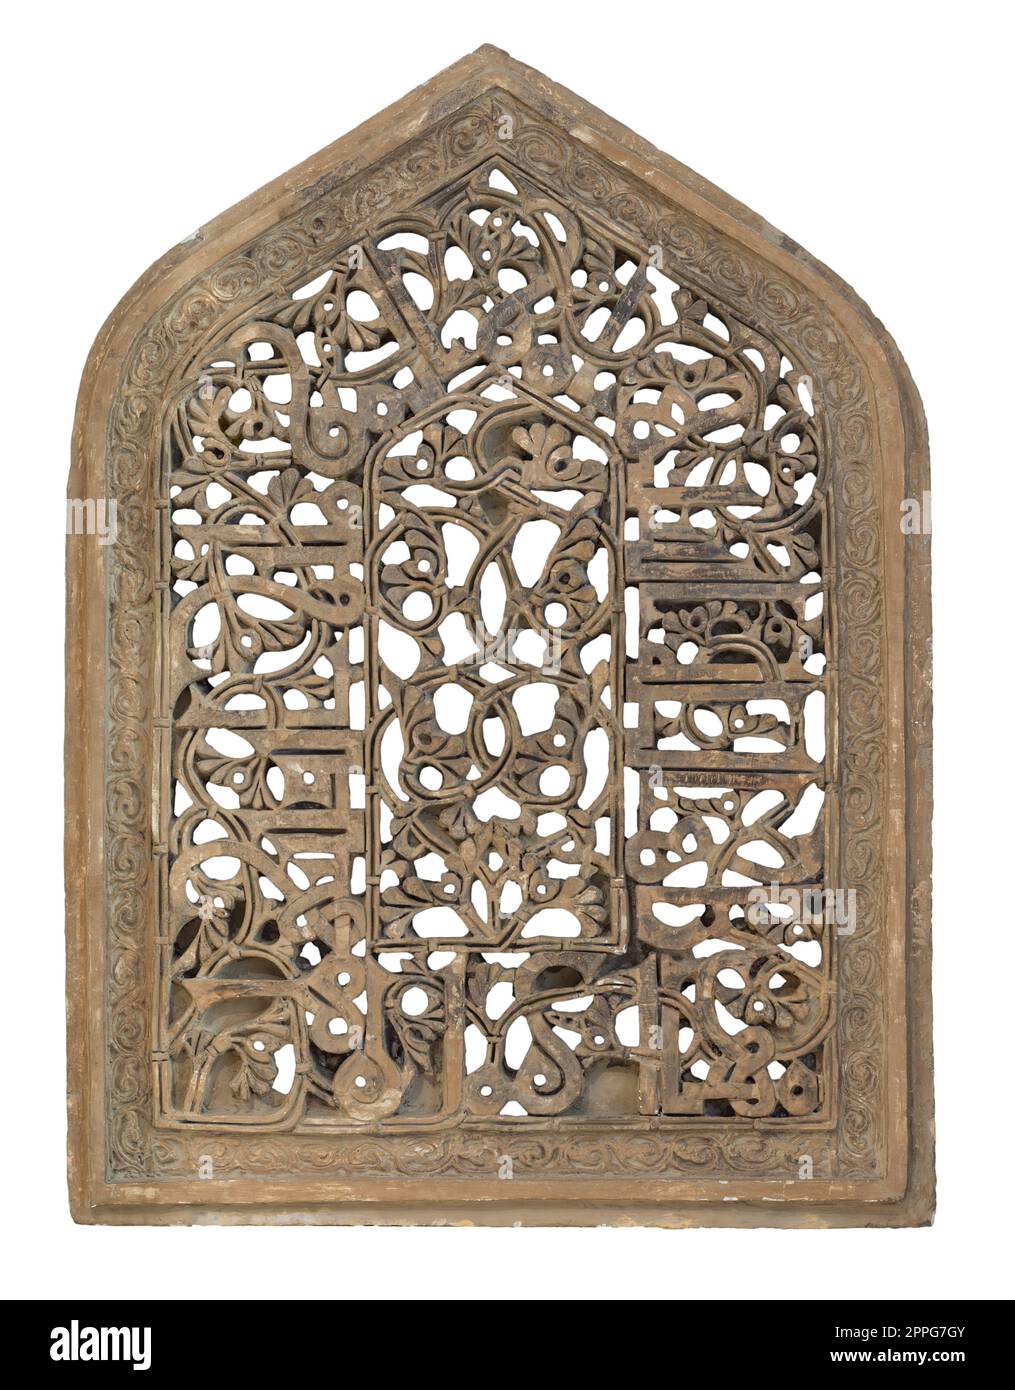 Fenêtre en stuc arqué de l'ère fatimide décorée de motifs floraux, isolée avec chemin de détourage Banque D'Images